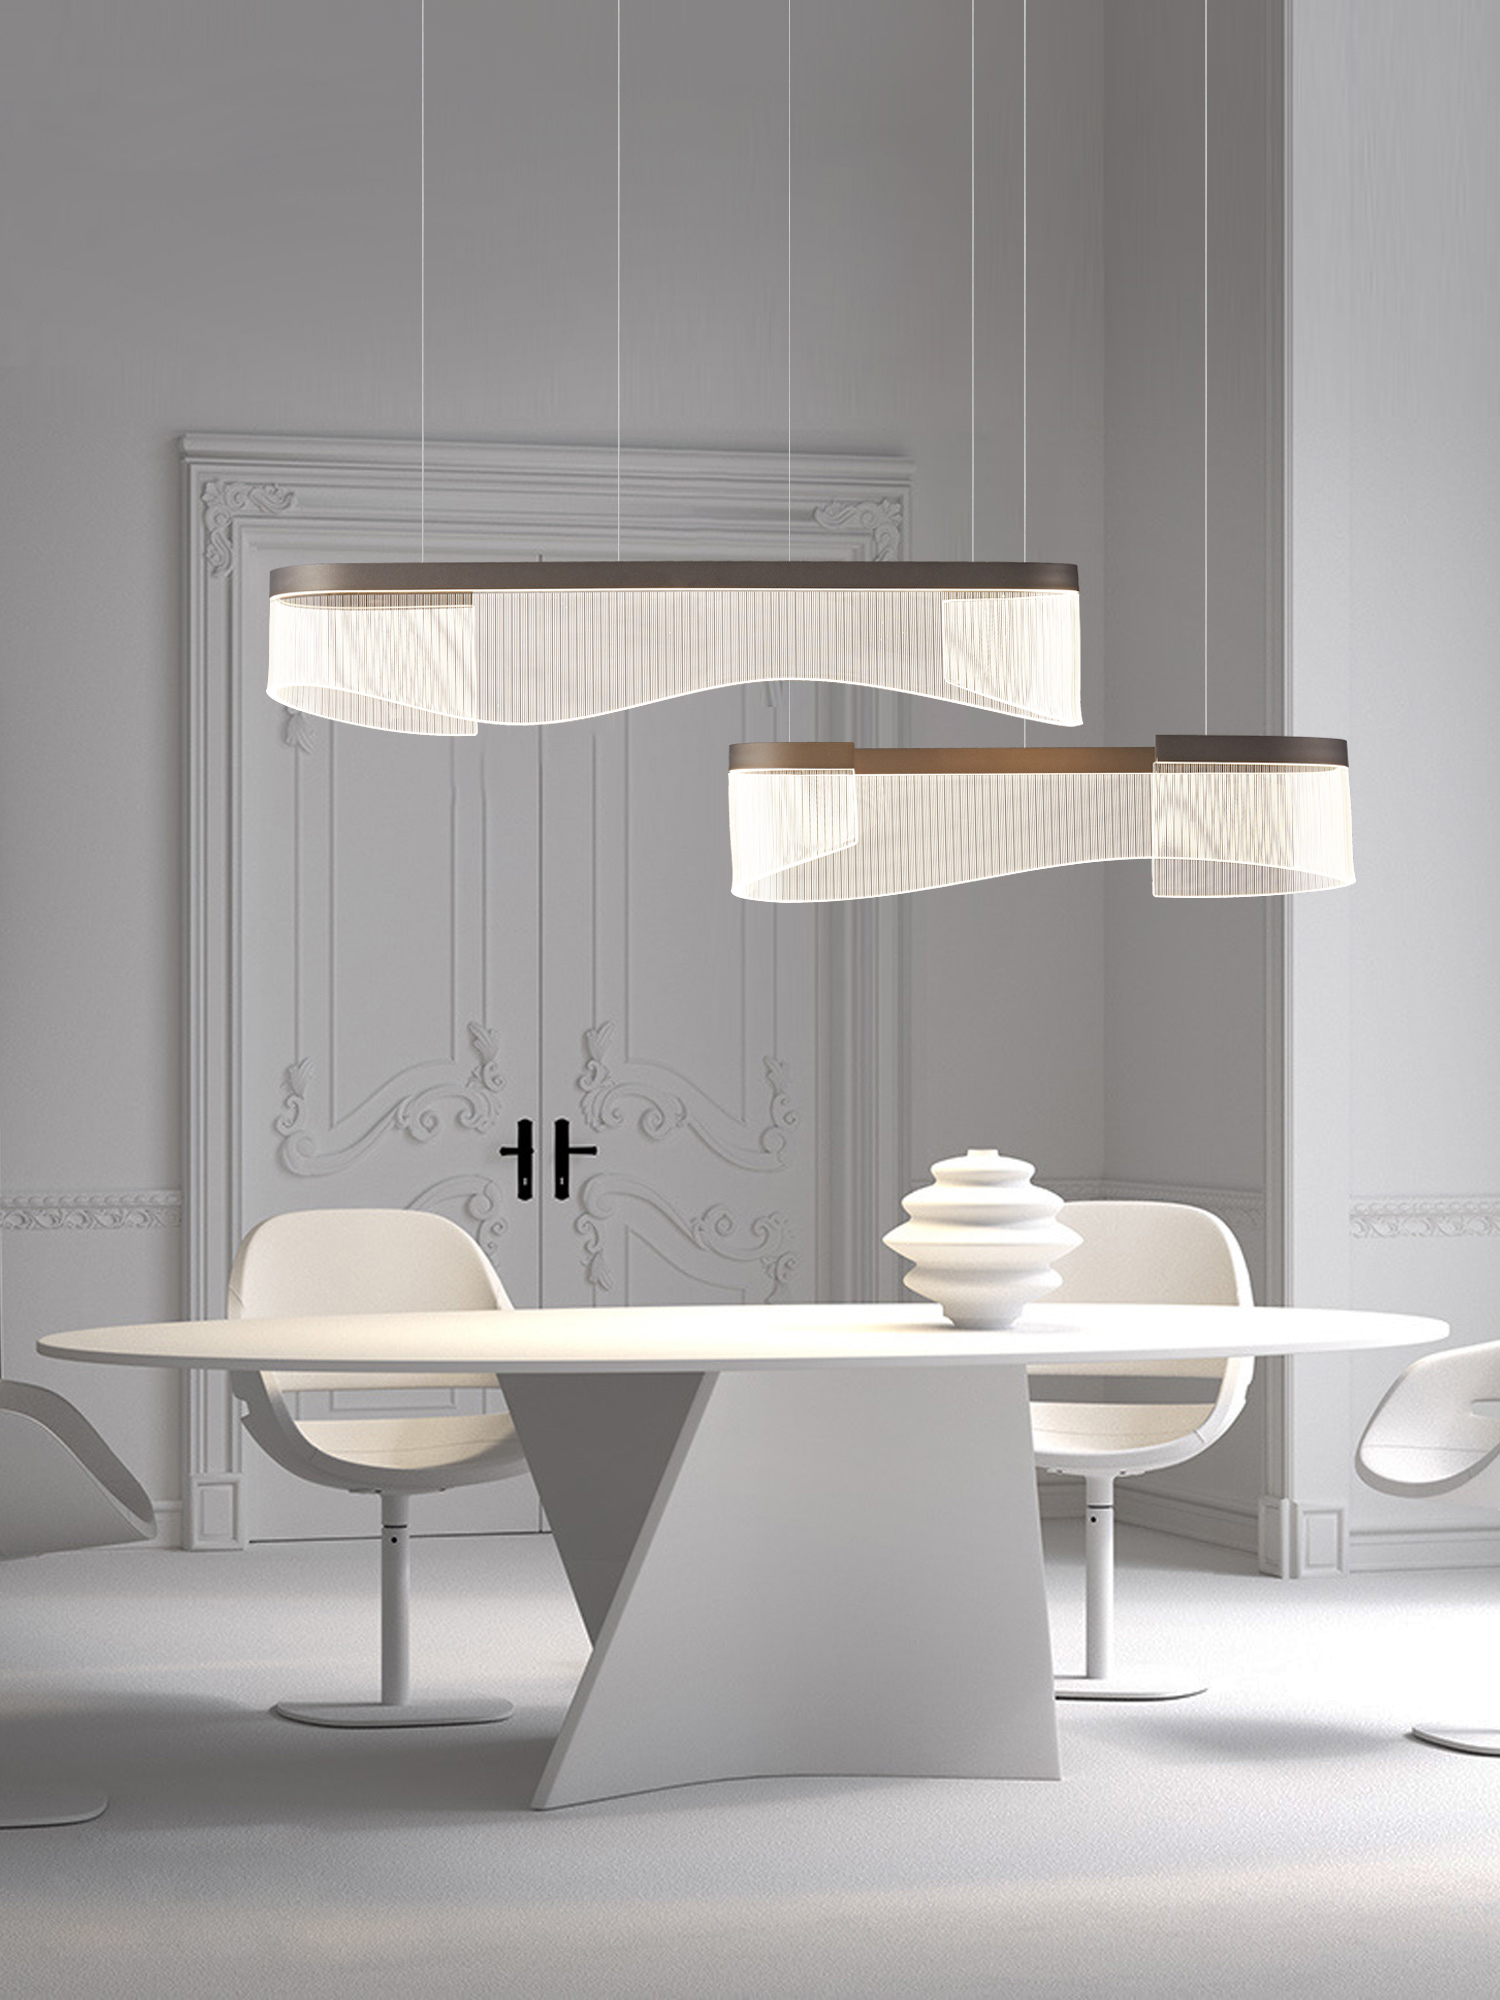 New restaurant strip chandelier designer simple Nordic exhibition hall bar